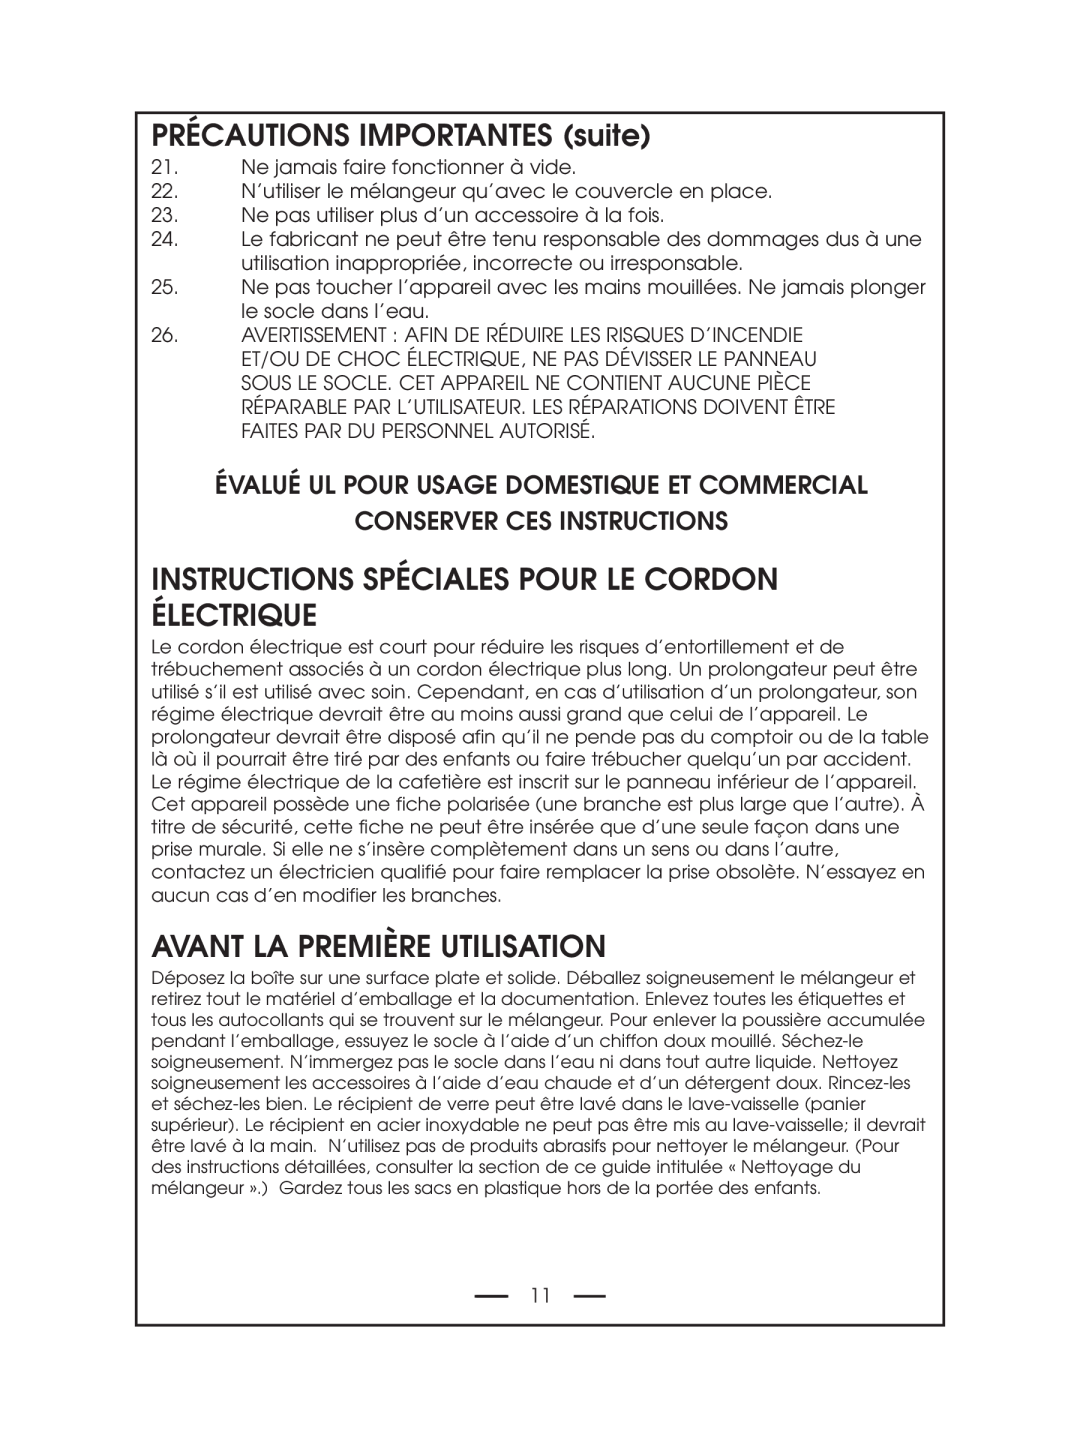 DeLonghi DBL750 Series instruction manual PRÉCAUTIONS IMPORTANTES suite, Instructions Spéciales Pour Le Cordon Électrique 